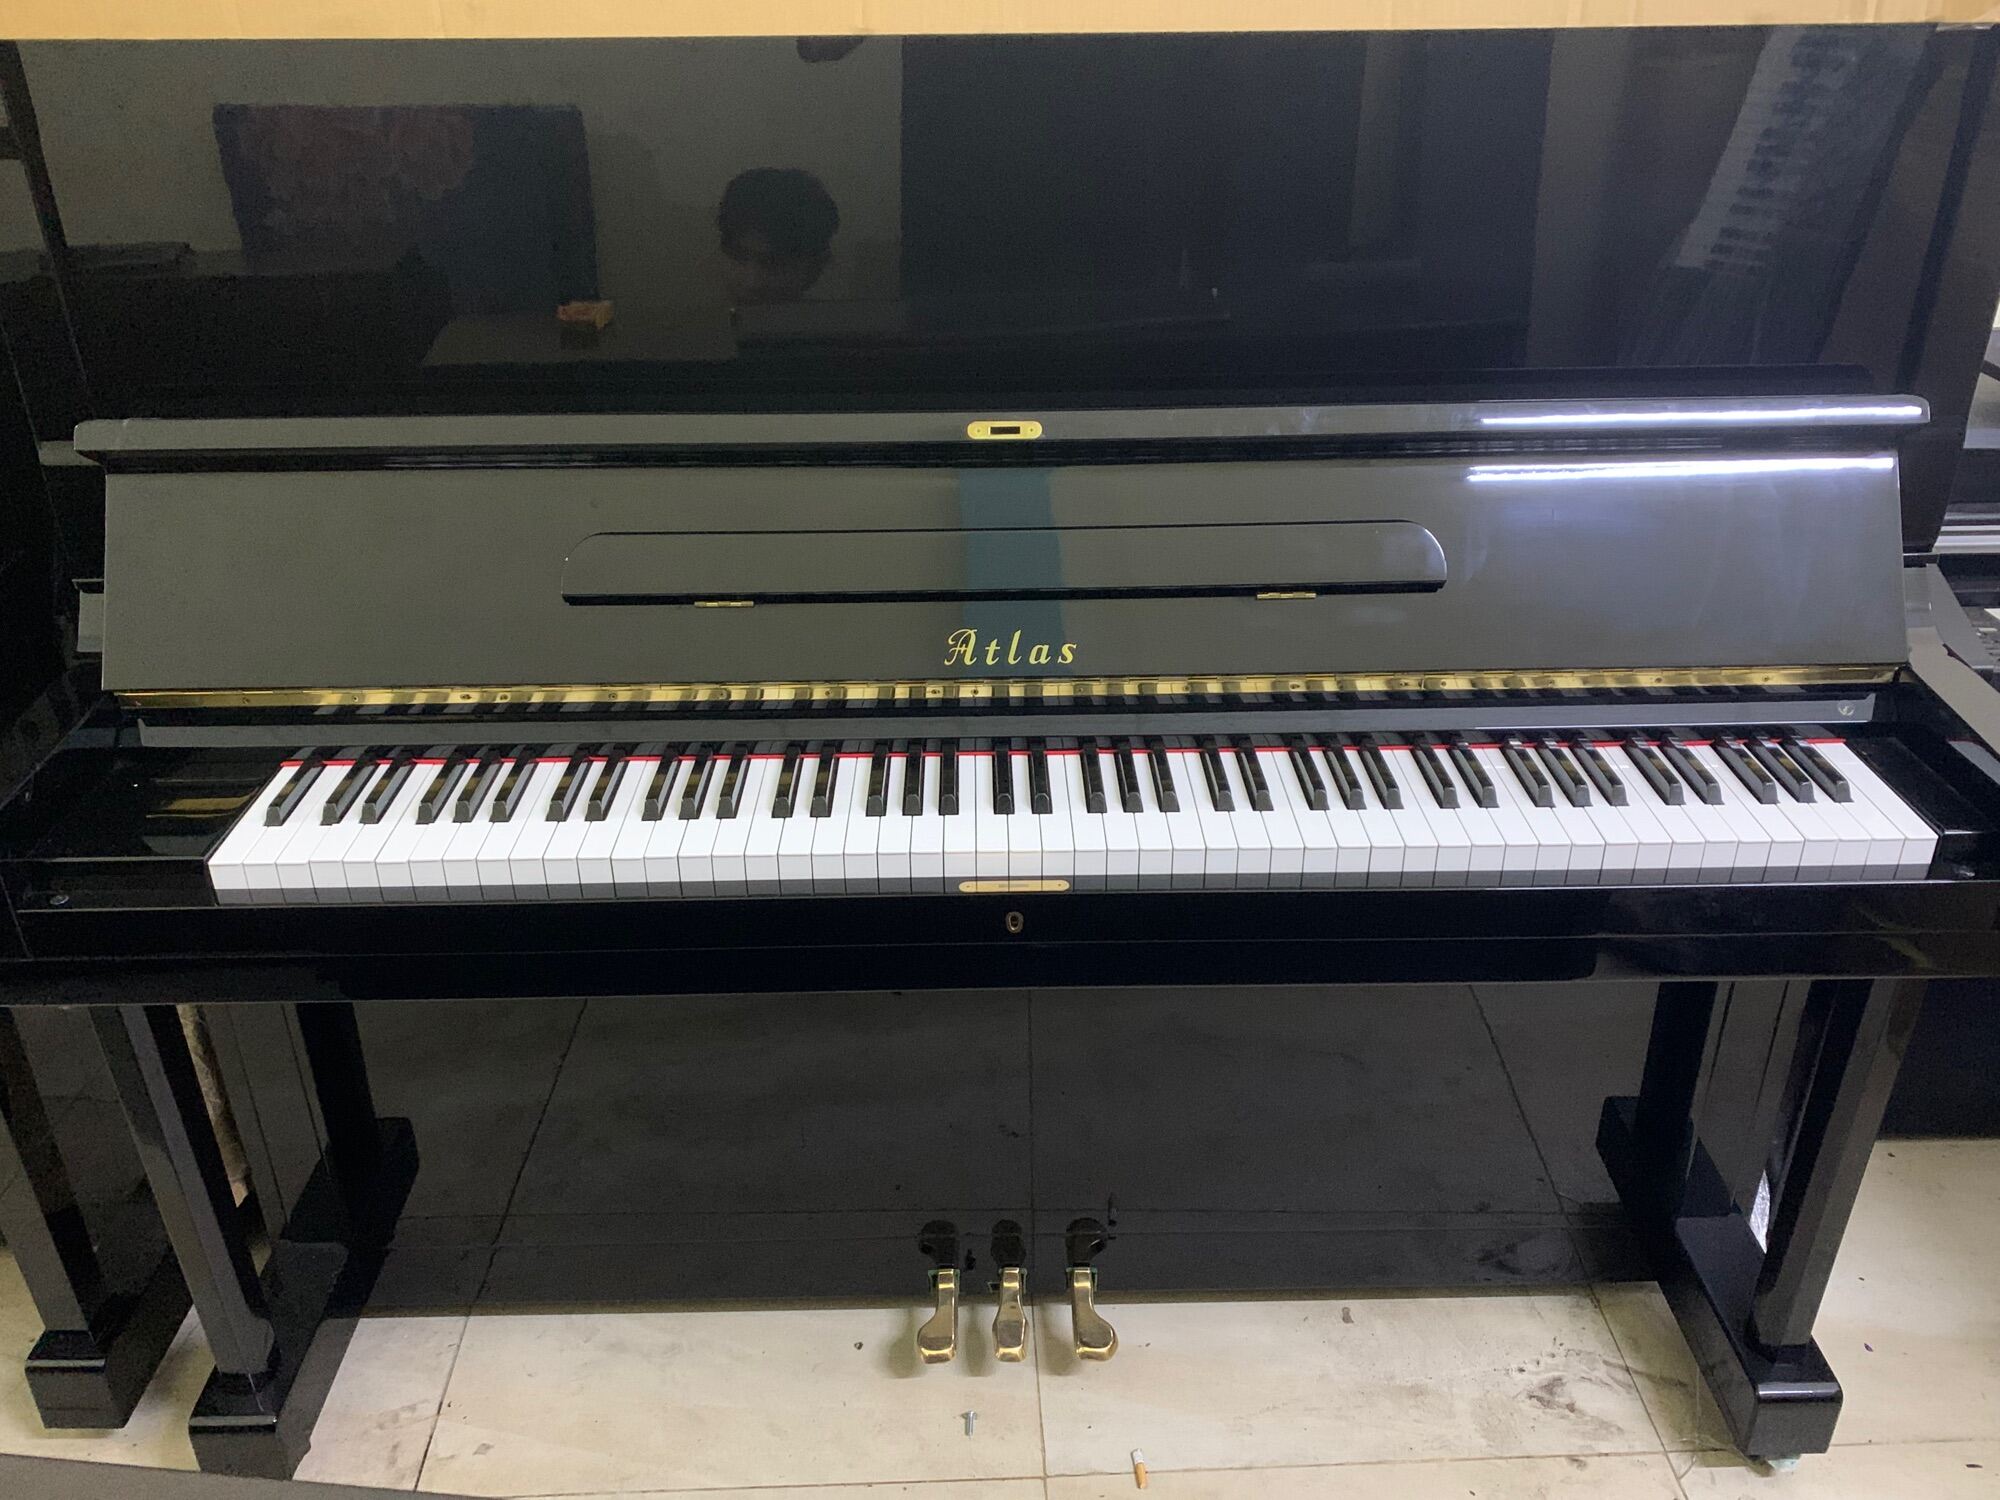 Piano cơ piano cơ Atlas na305 đen bóng giá 28tr Kèm đầy đủ phụ kiện